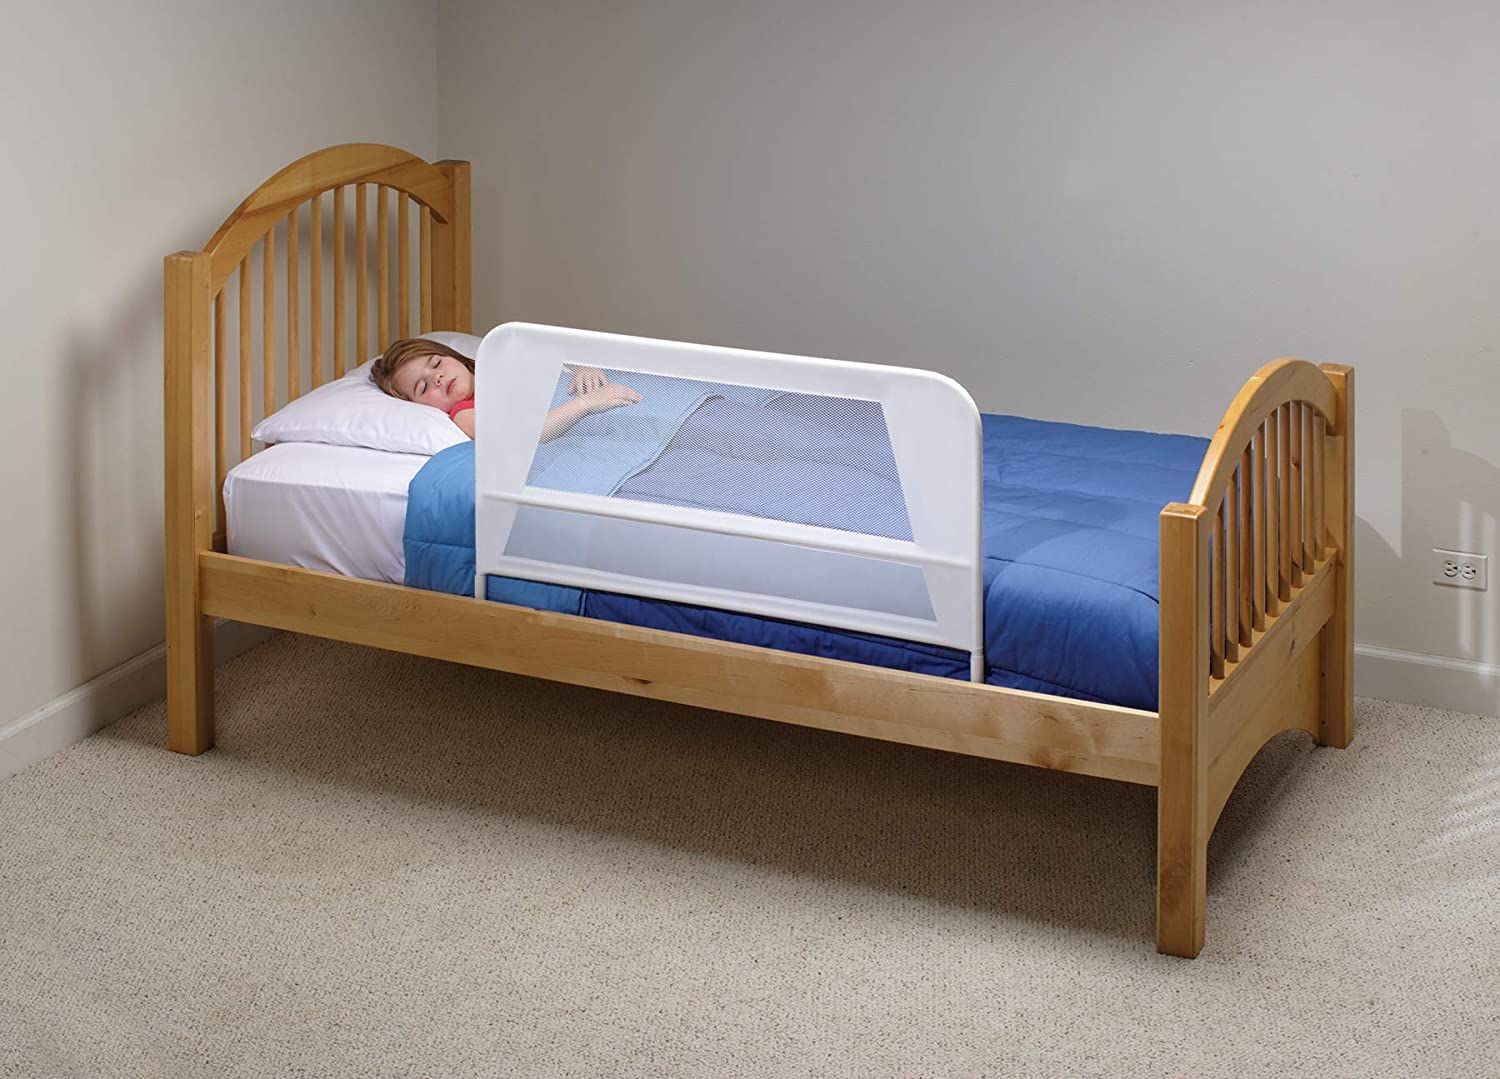 KidCo White Mesh Children's Bed Rail